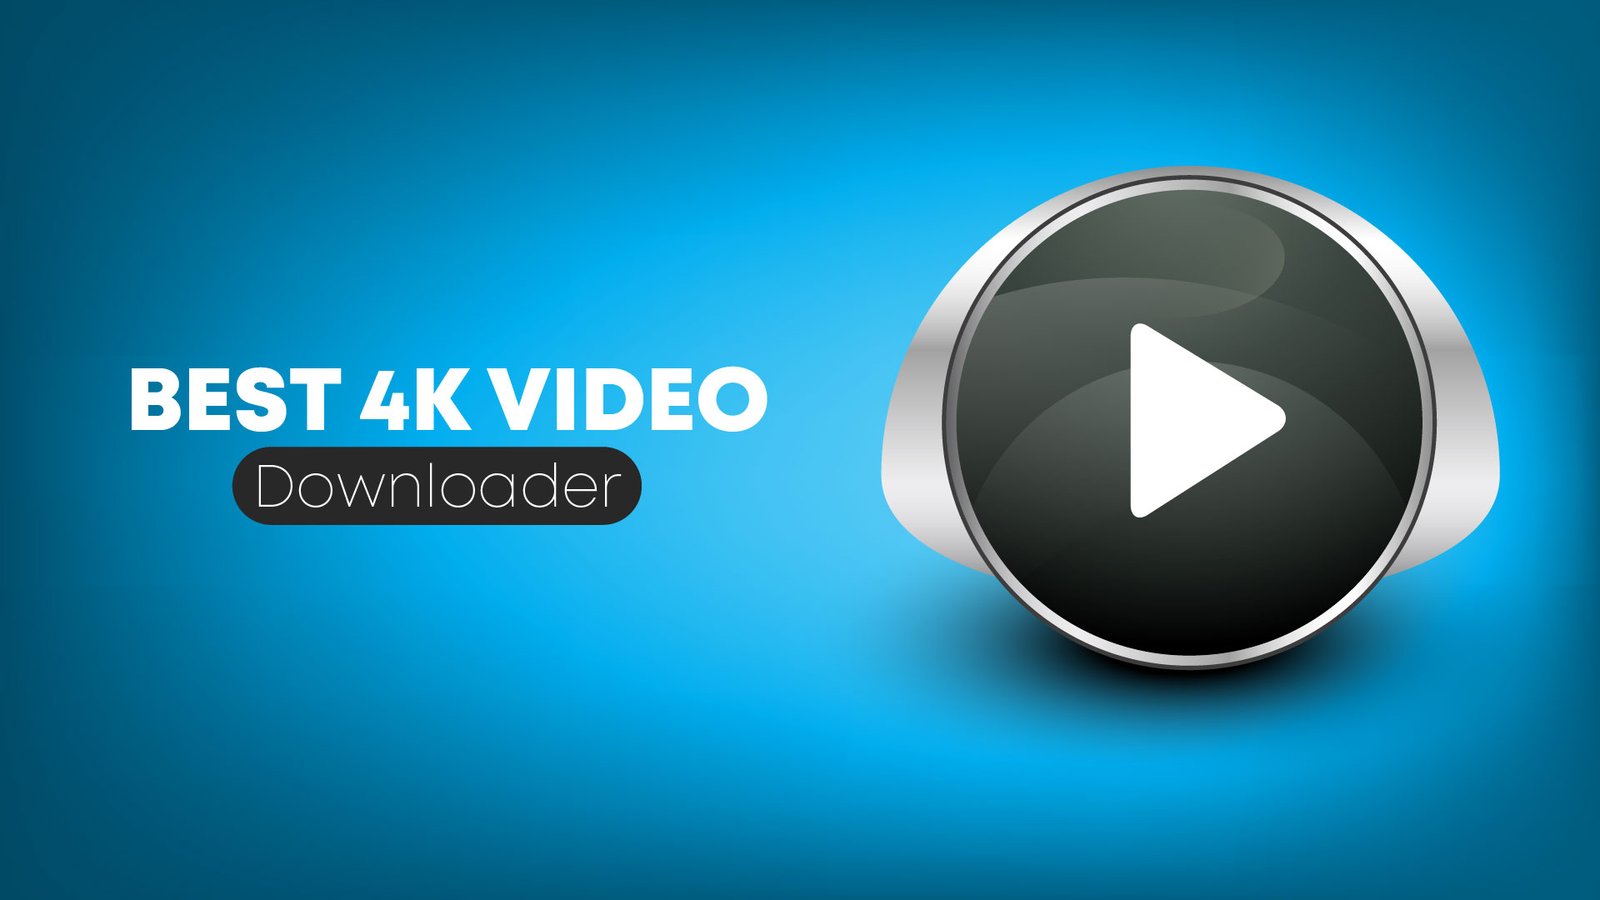 4k video downloader for mobile